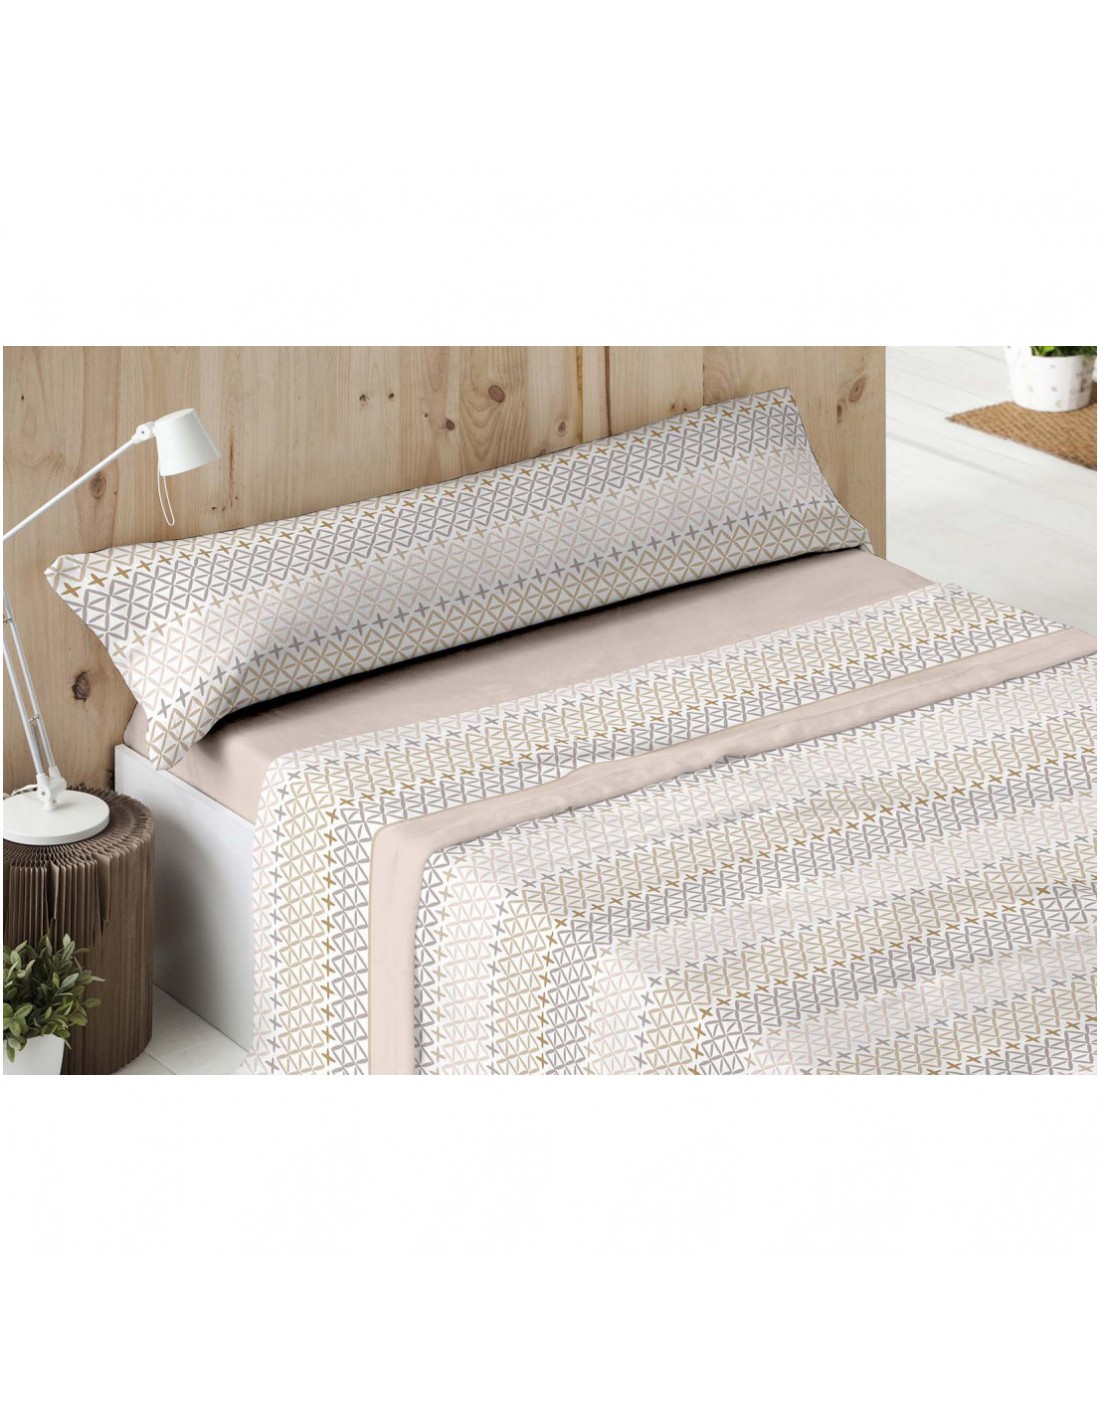 Juego sábanas coralina para la cama del hogar modelo JARTUM